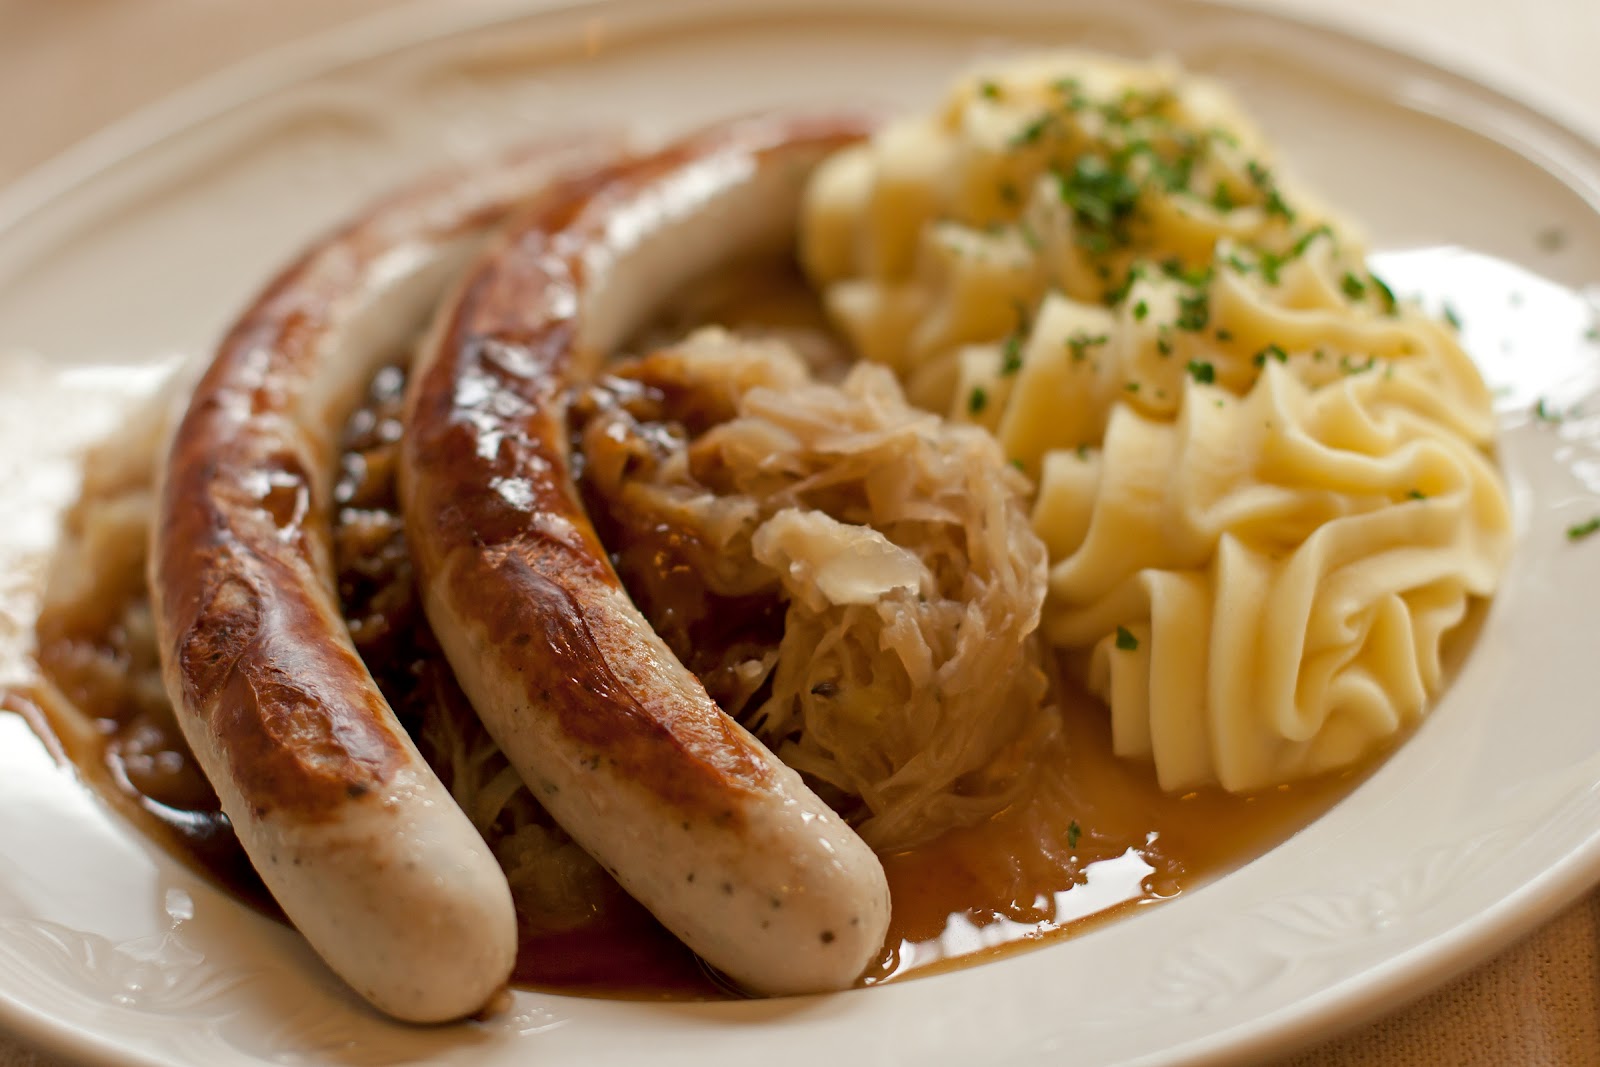 Schmand Sauerkraut Mit Bratwurst — Rezepte Suchen